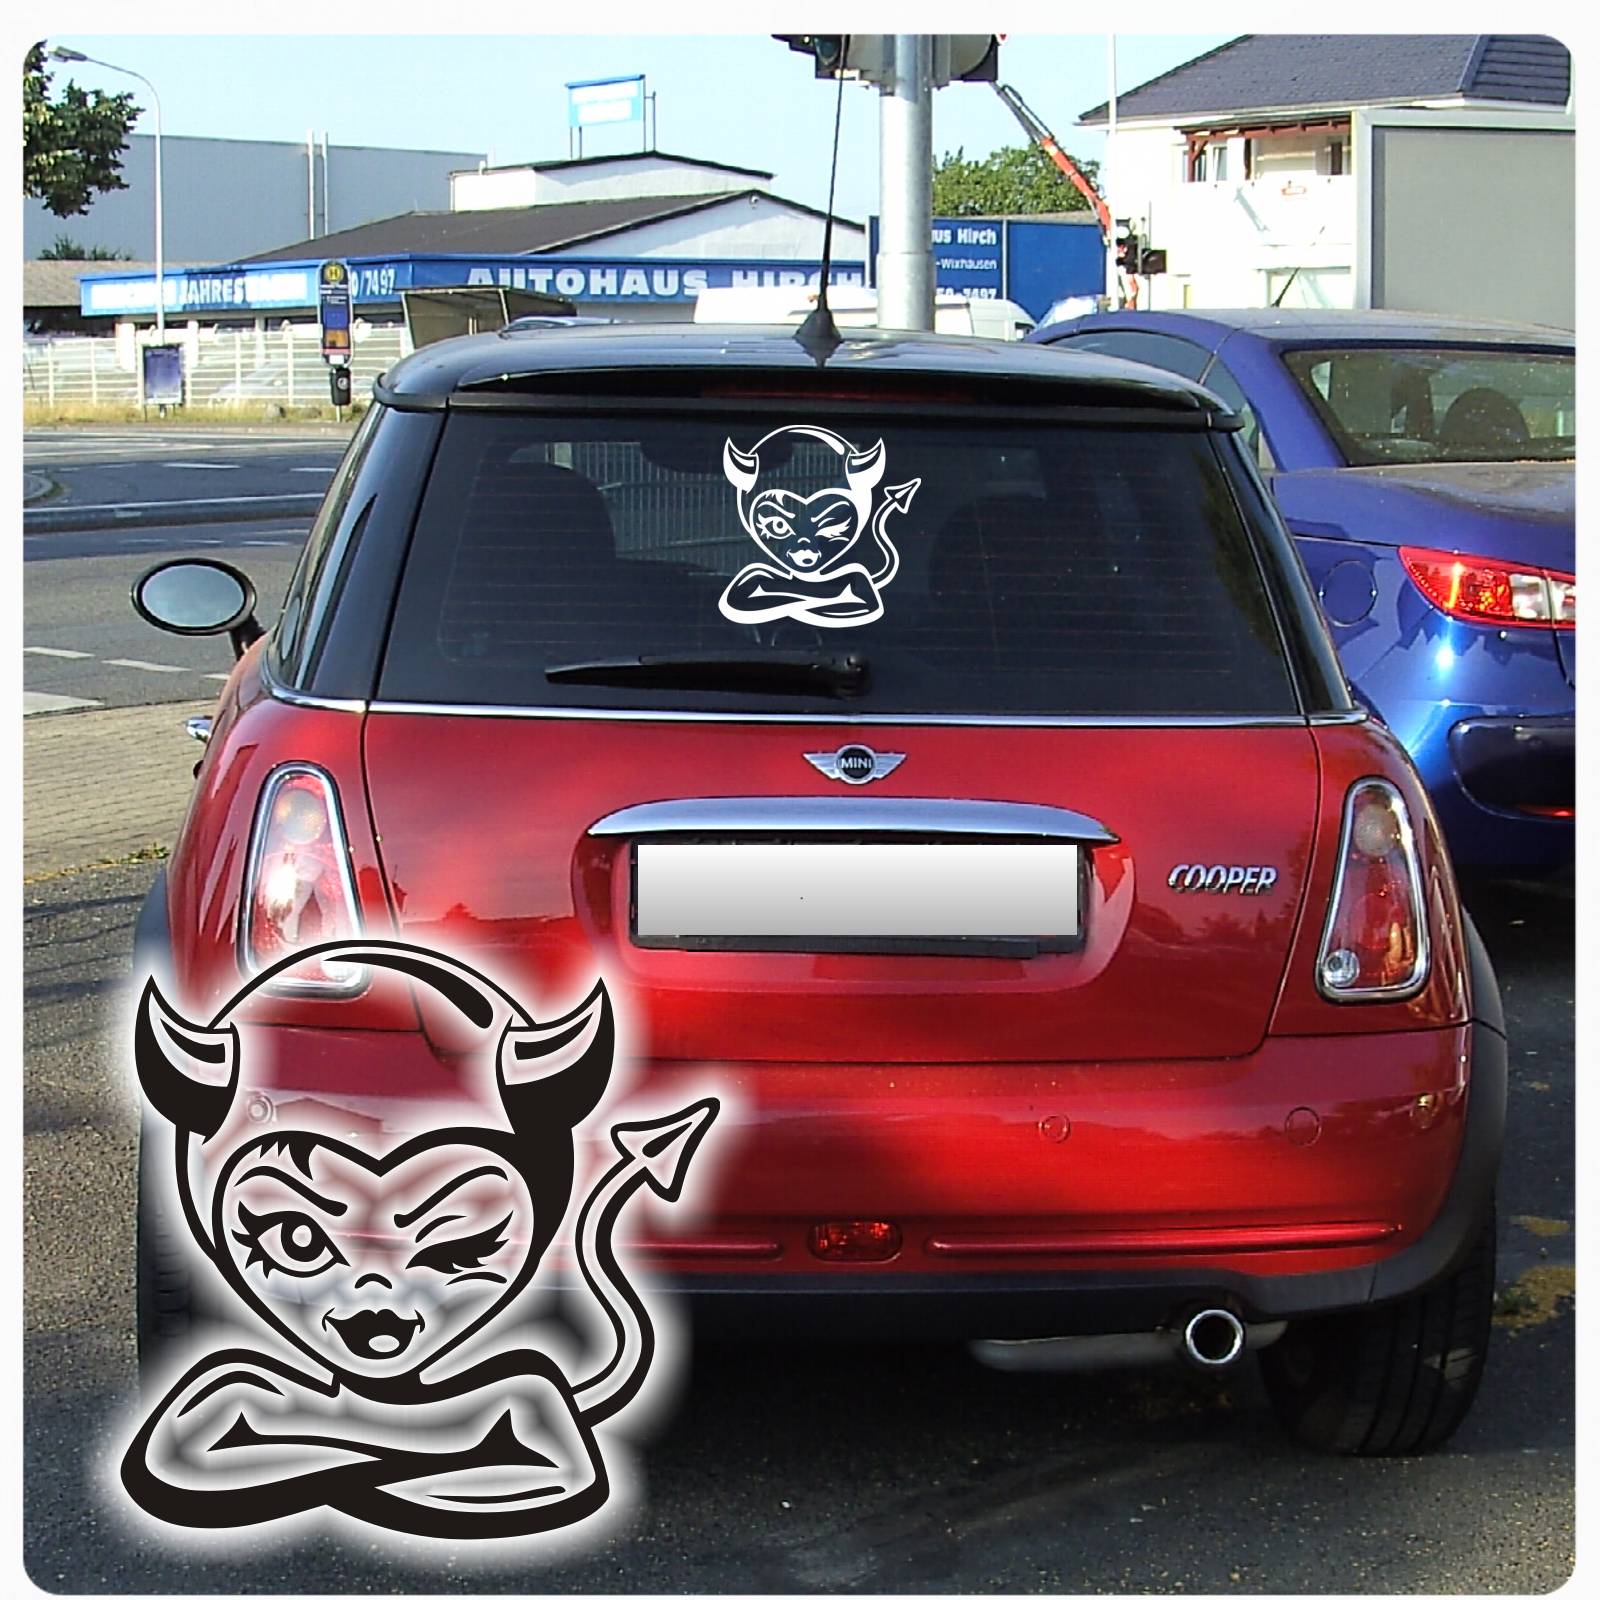 Autoaufkleber Bad Girl Teufelchen Aufkleber Auto Sticker Böses Mädchen A159 Ebay